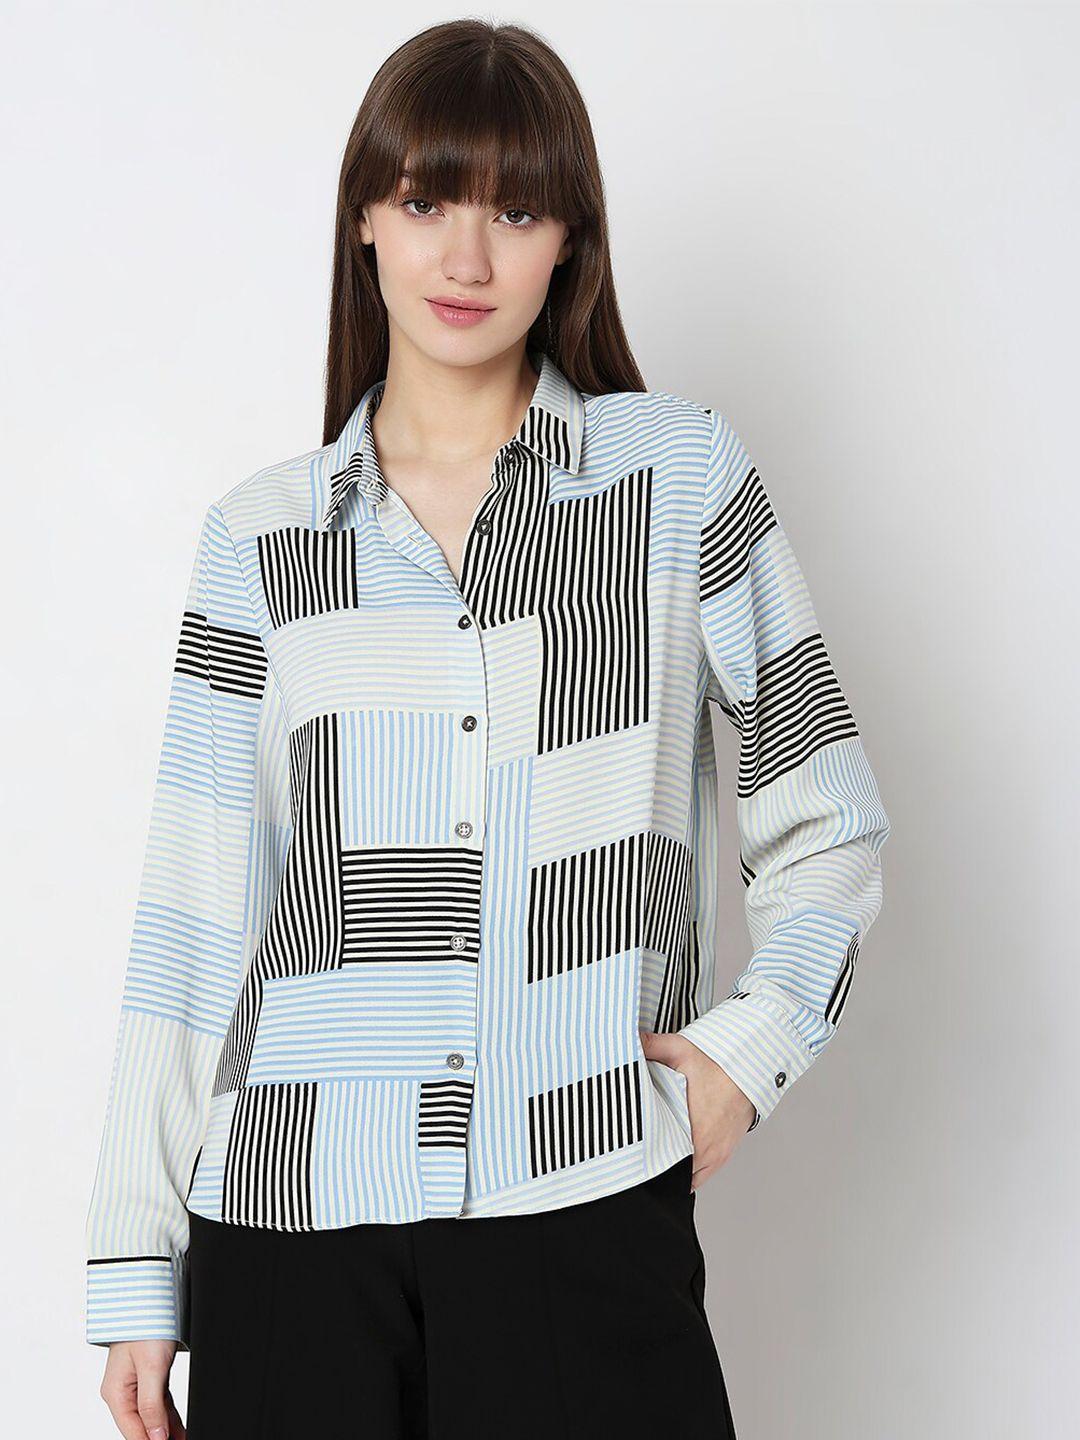 vero-moda-striped-spread-collar-casual-shirt